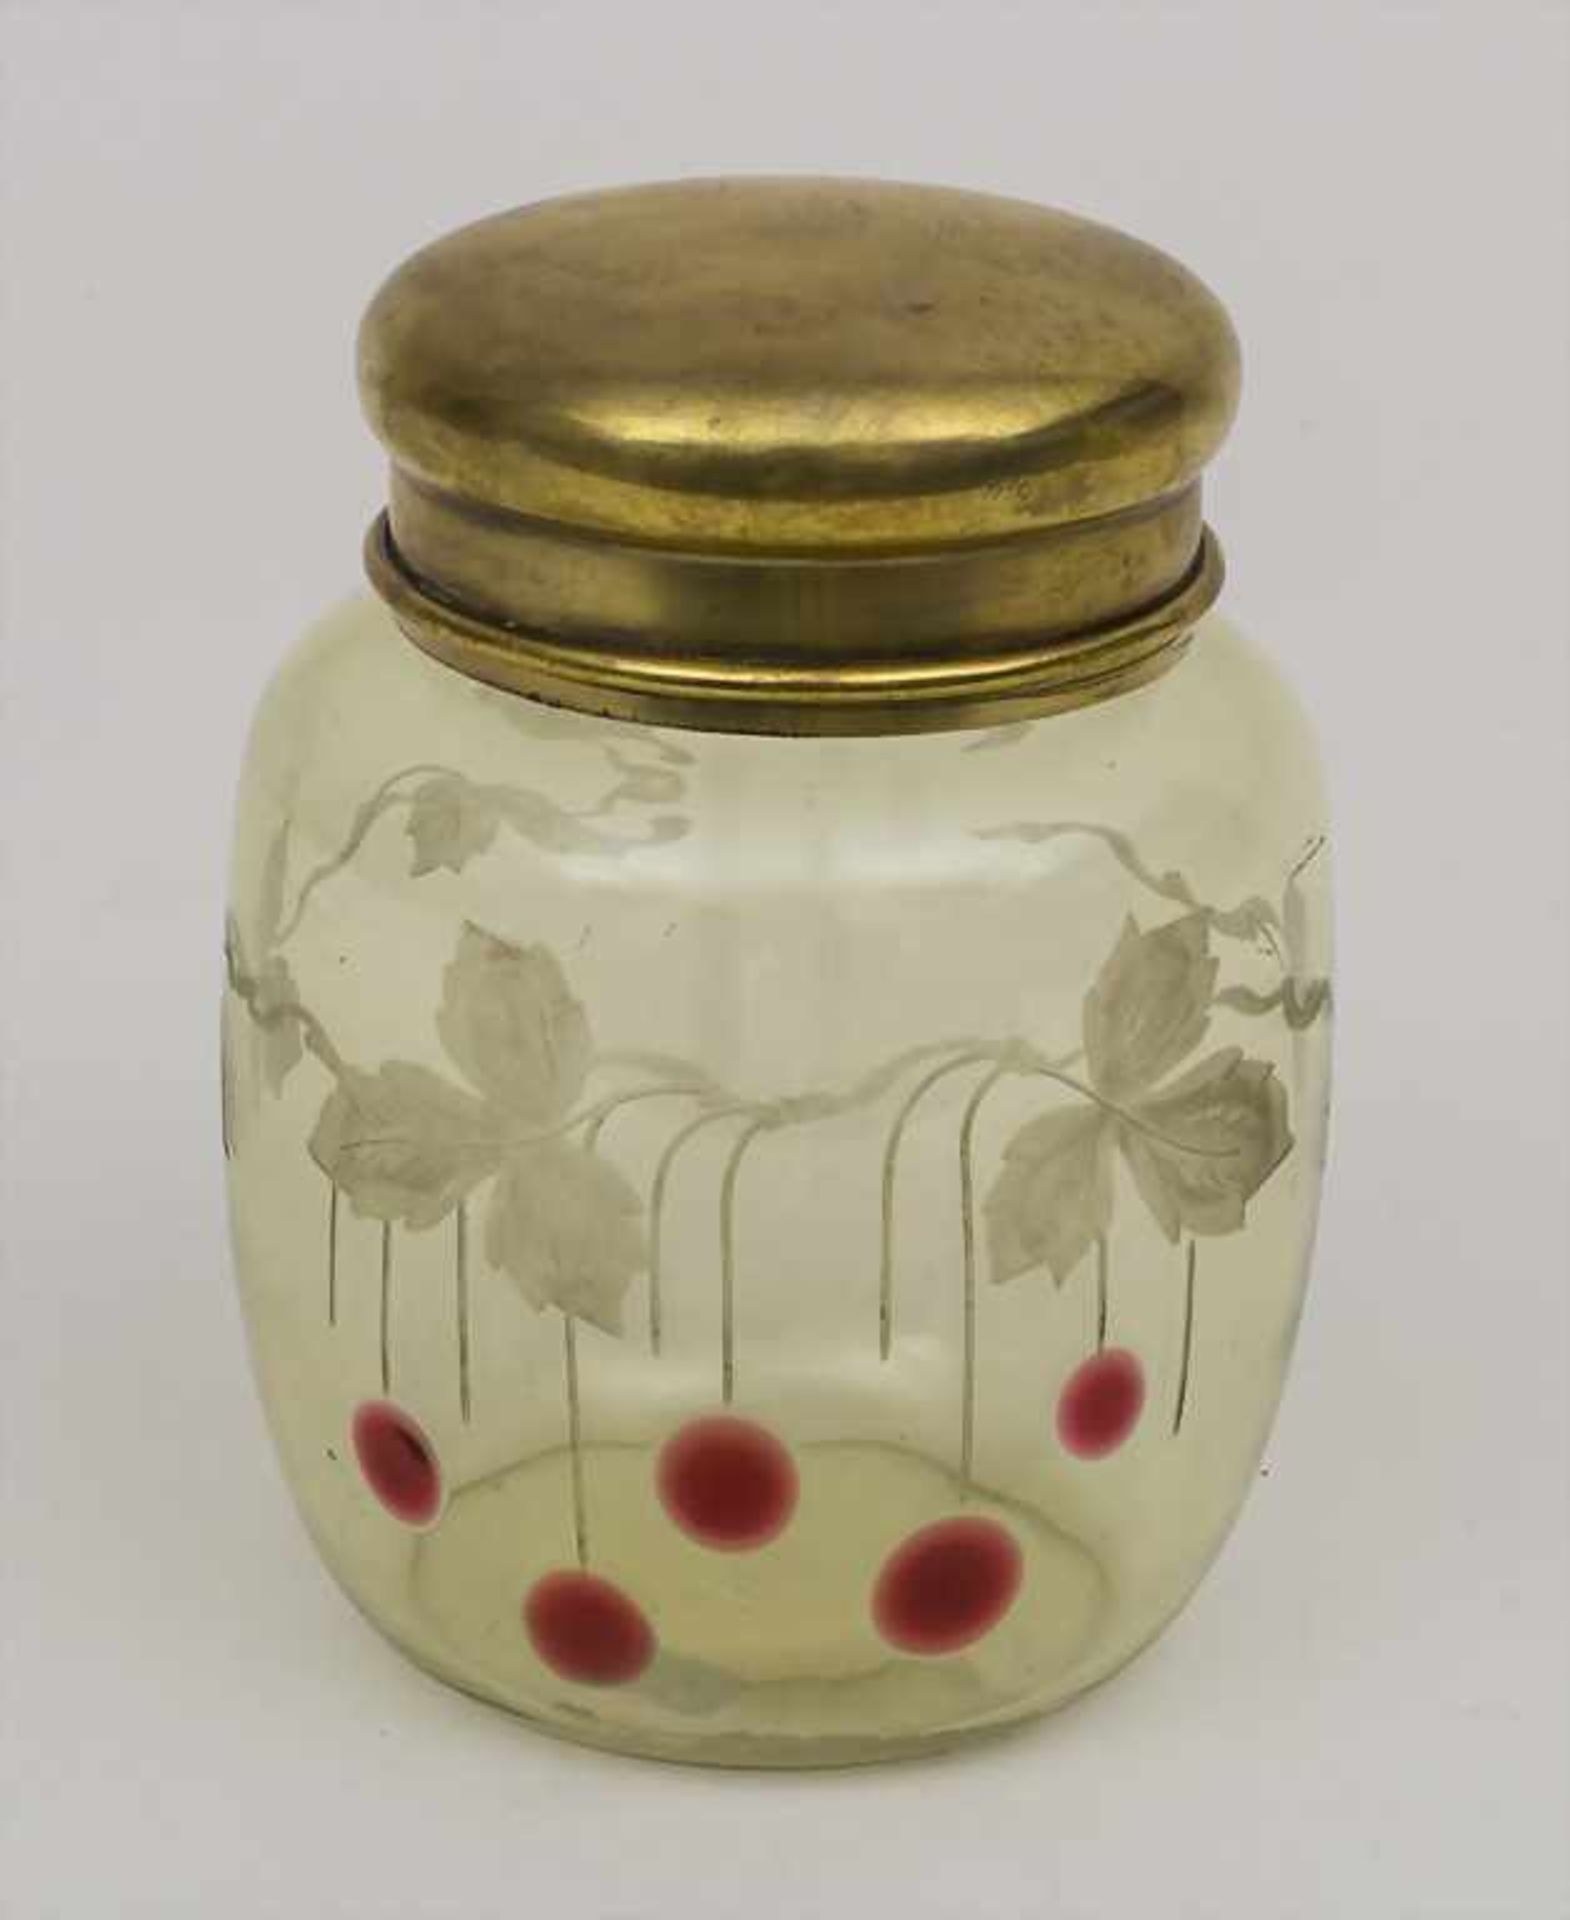 Jugendstil Glasdose / An Art Nouveau glass container, um 1900Material: hellgrünes Glas mit roten